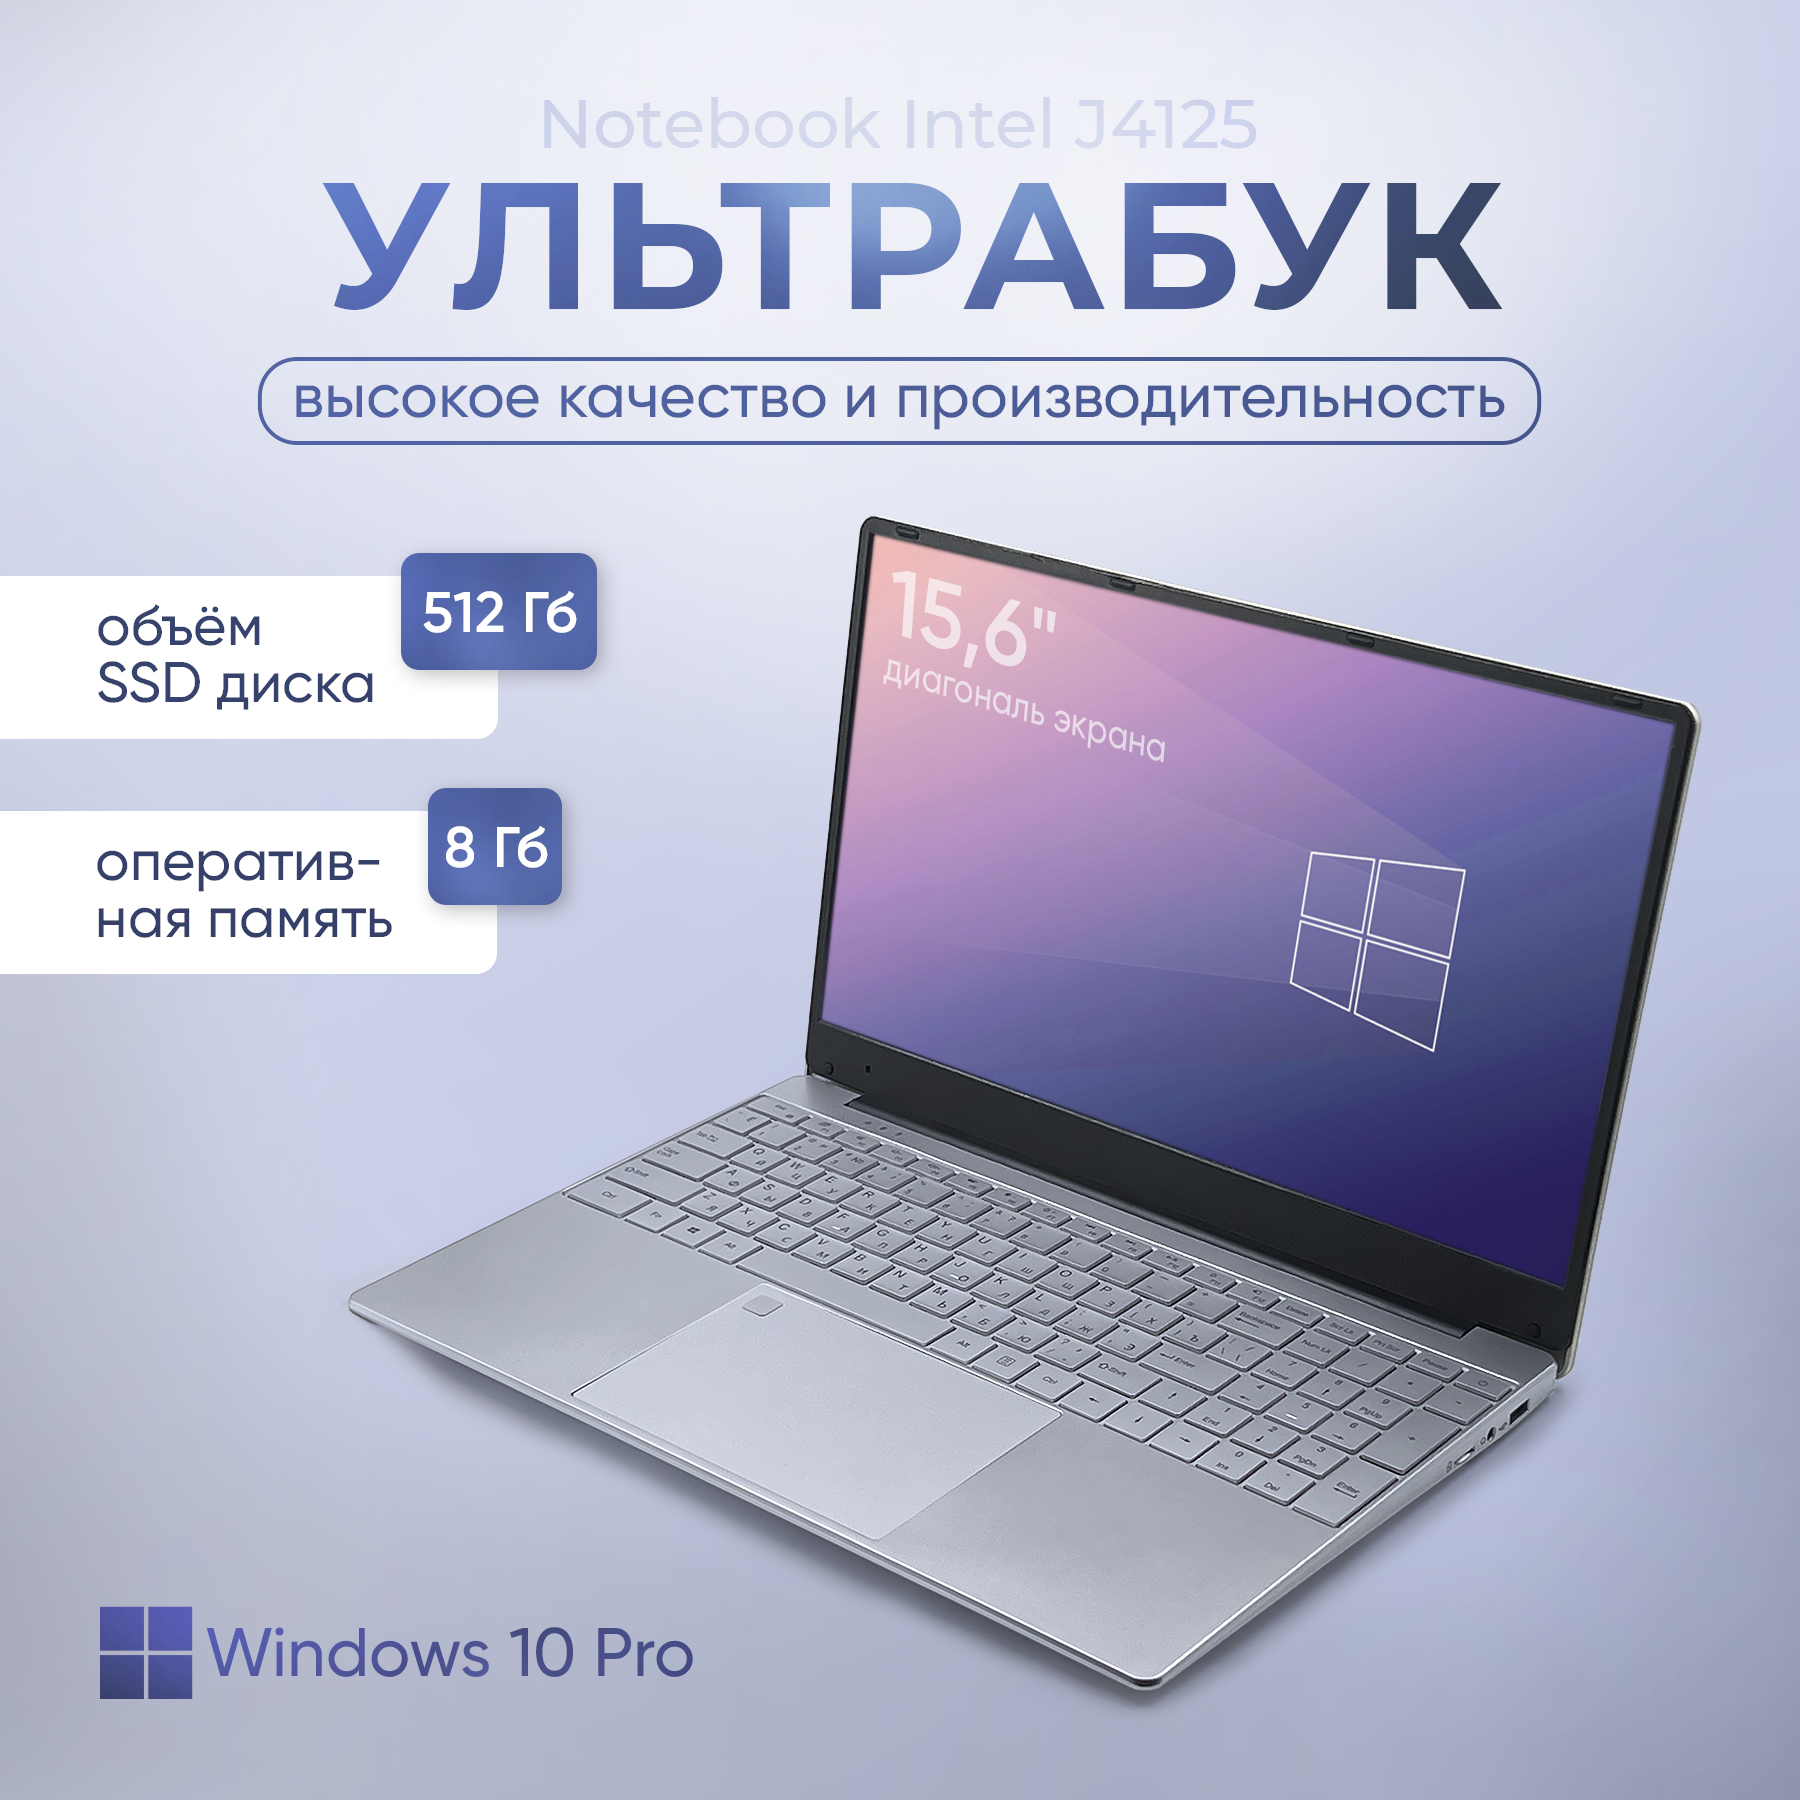 Ноутбук 15.6, ультрабук для работы и учебы, Notebook Intel J4125, RAM 8 ГБ, DDR4, SSD 512 ГБ, Intel UHD Graphics 600, Windows, русская раскладка